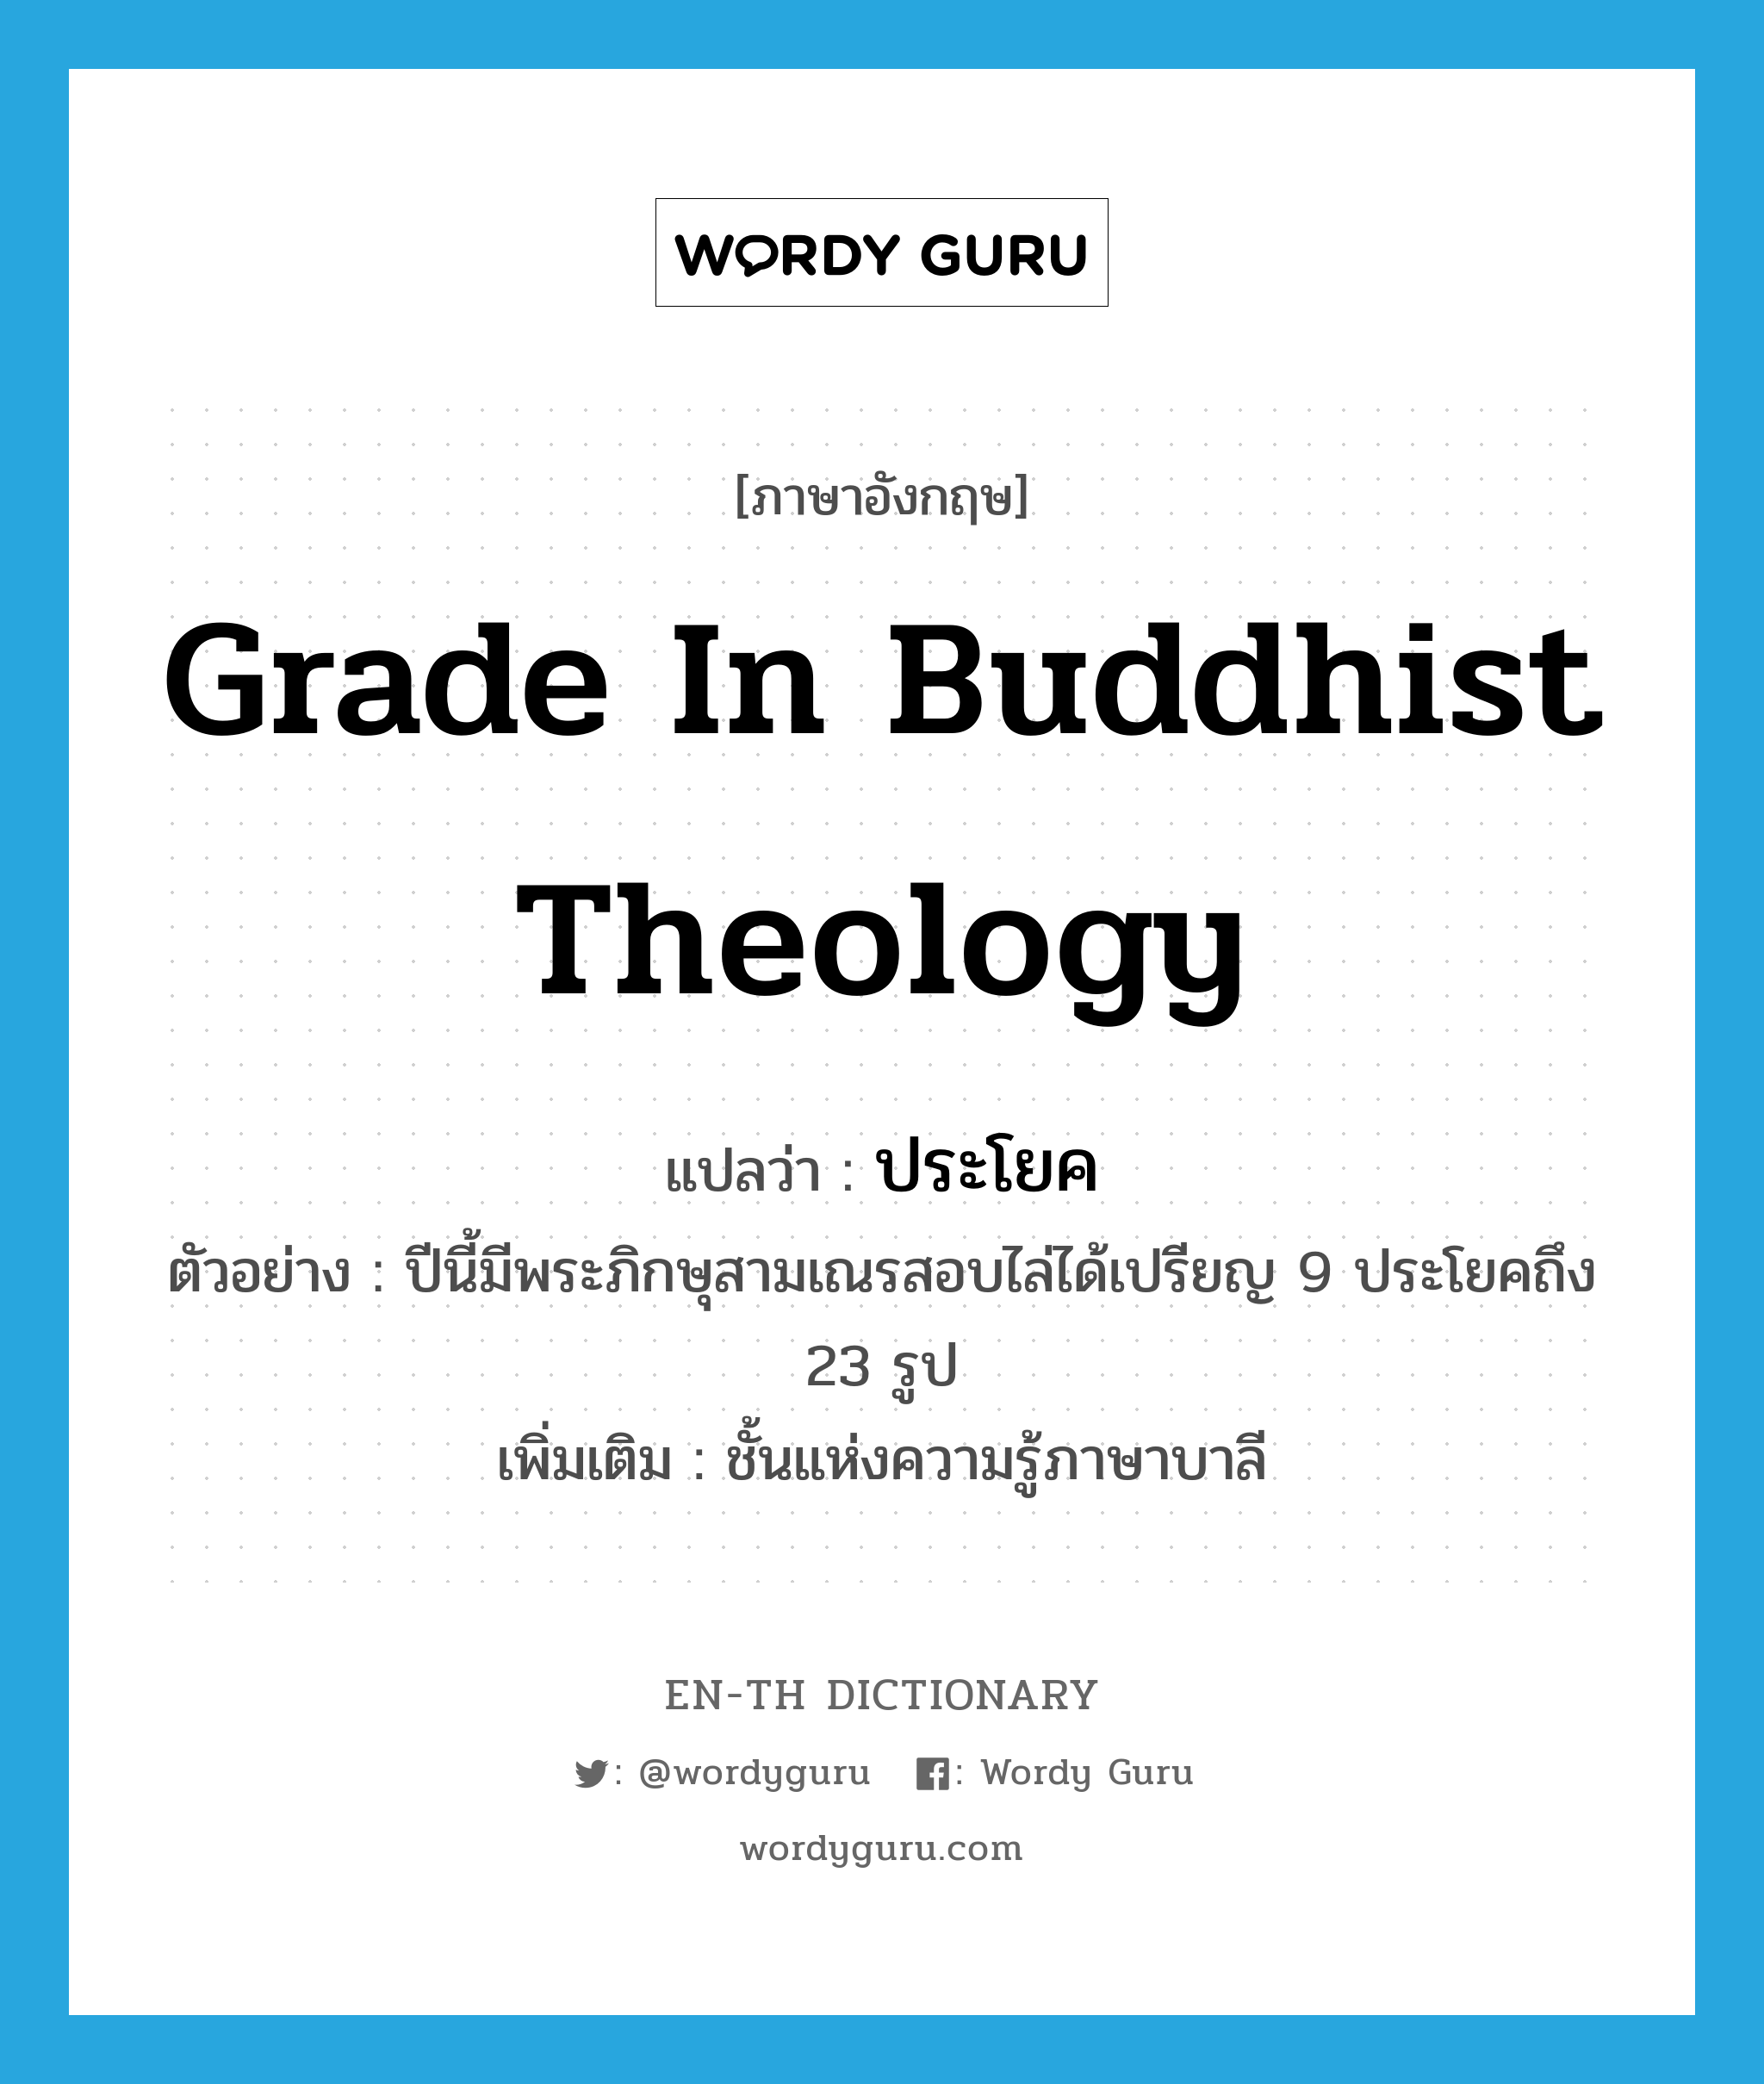 ประโยค ภาษาอังกฤษ?, คำศัพท์ภาษาอังกฤษ ประโยค แปลว่า grade in Buddhist theology ประเภท N ตัวอย่าง ปีนี้มีพระภิกษุสามเณรสอบไล่ได้เปรียญ 9 ประโยคถึง 23 รูป เพิ่มเติม ชั้นแห่งความรู้ภาษาบาลี หมวด N